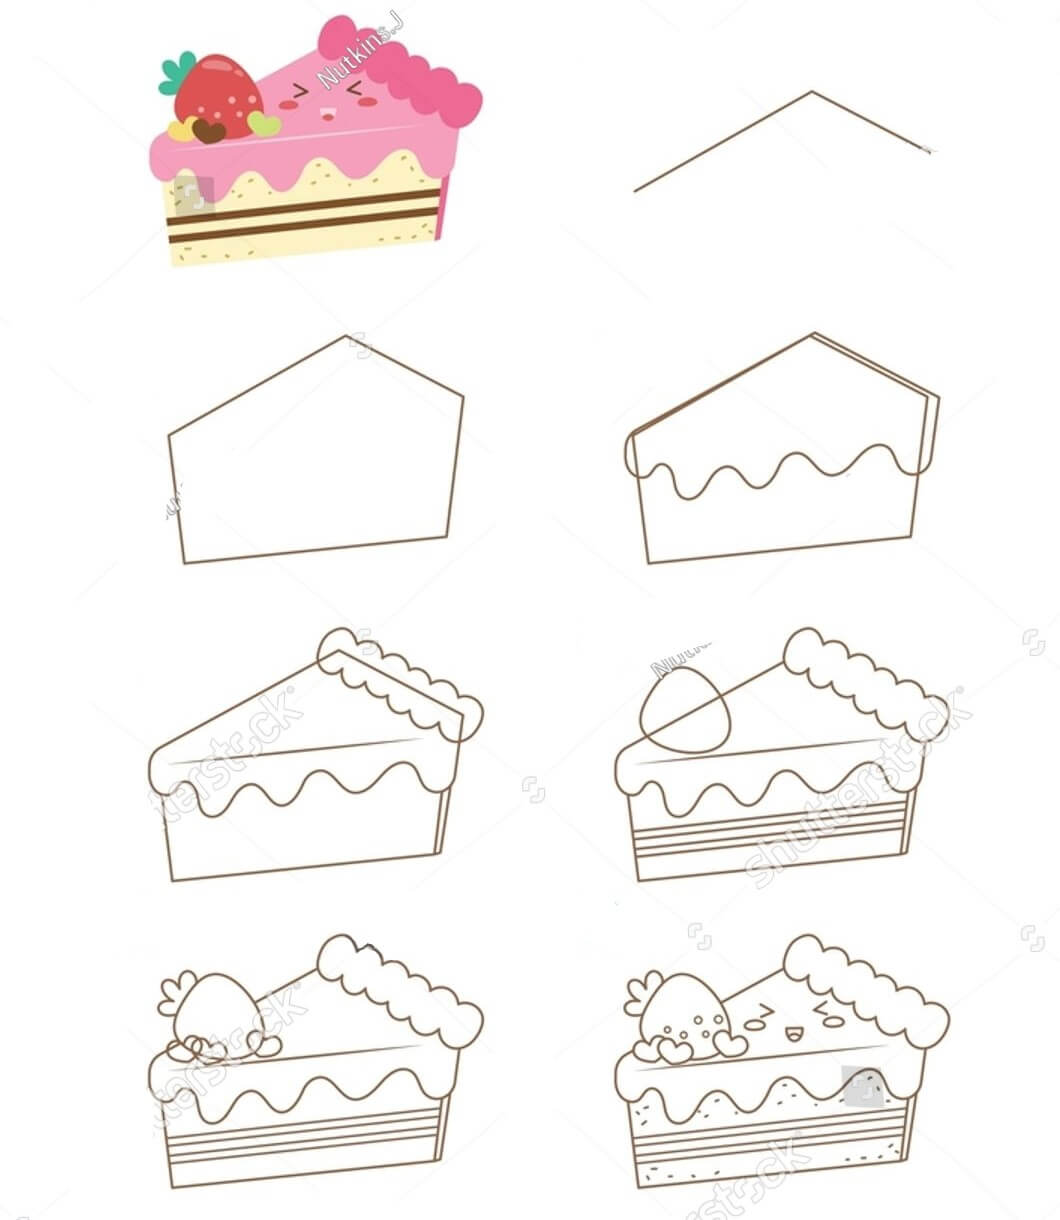 Yksinkertainen kakun piirustus (3) piirustus